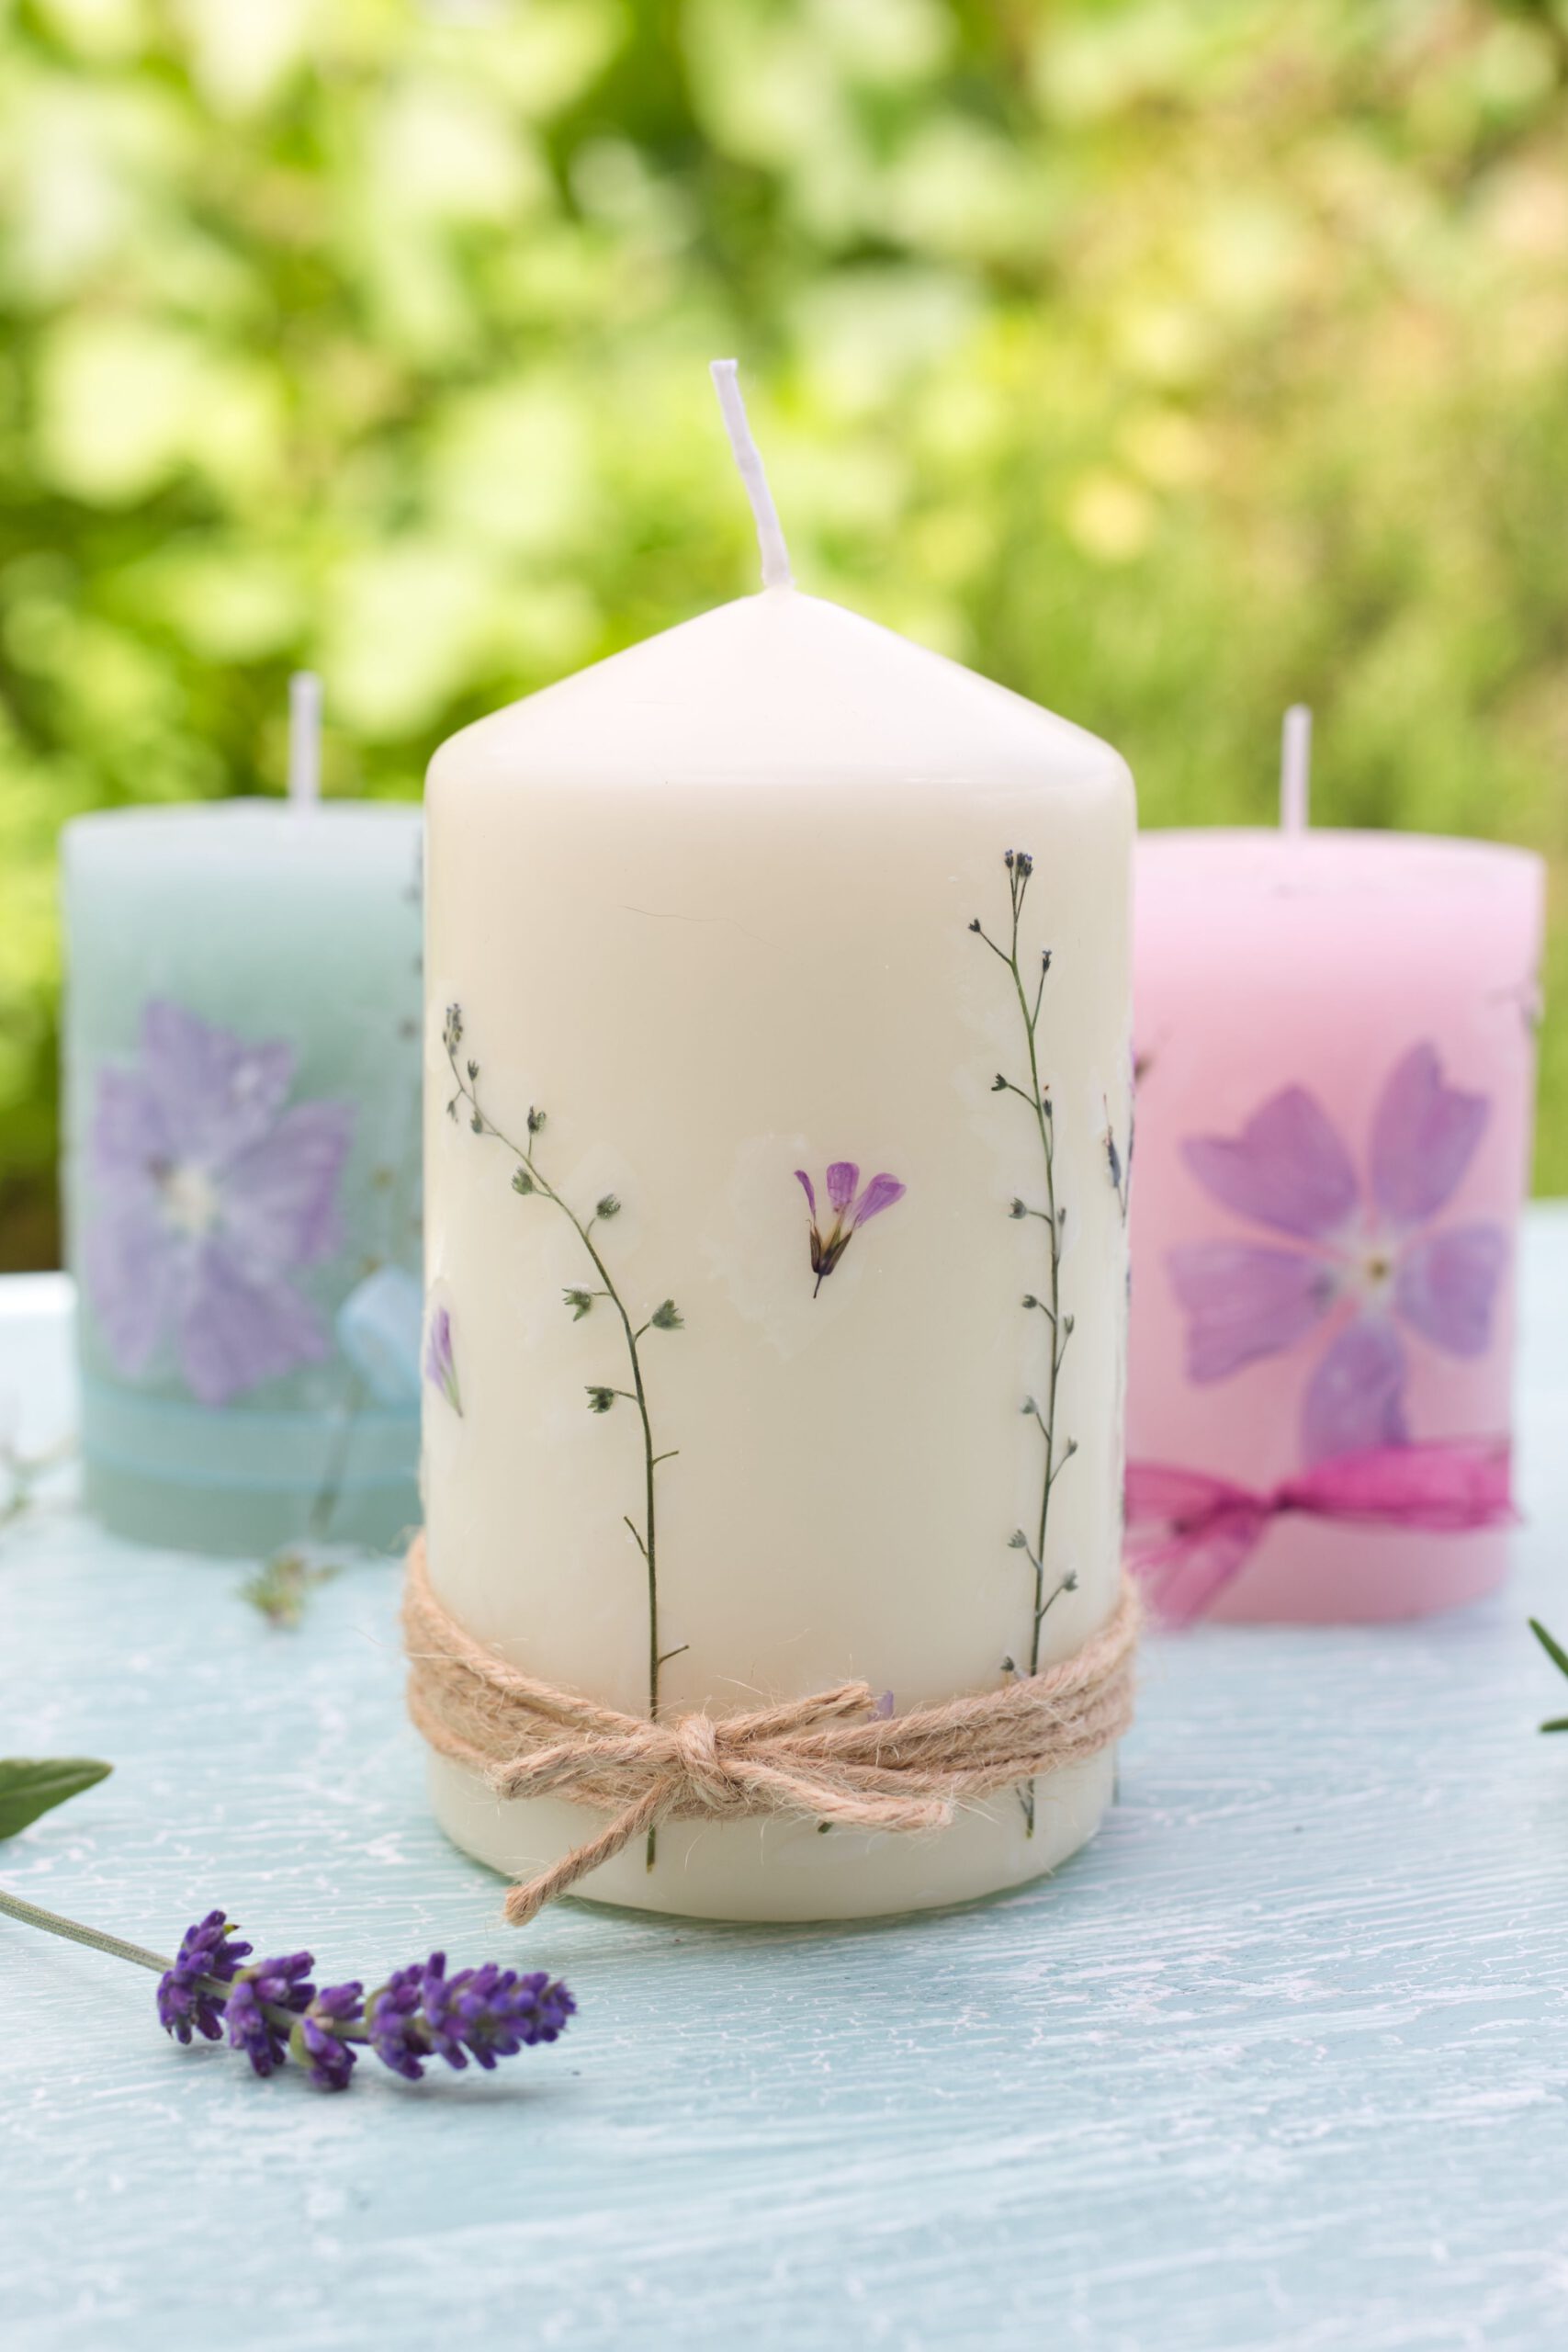 Kerzen mit gepressten Blüten sind ein wunderbares Geschenk - einfache DIY Idee